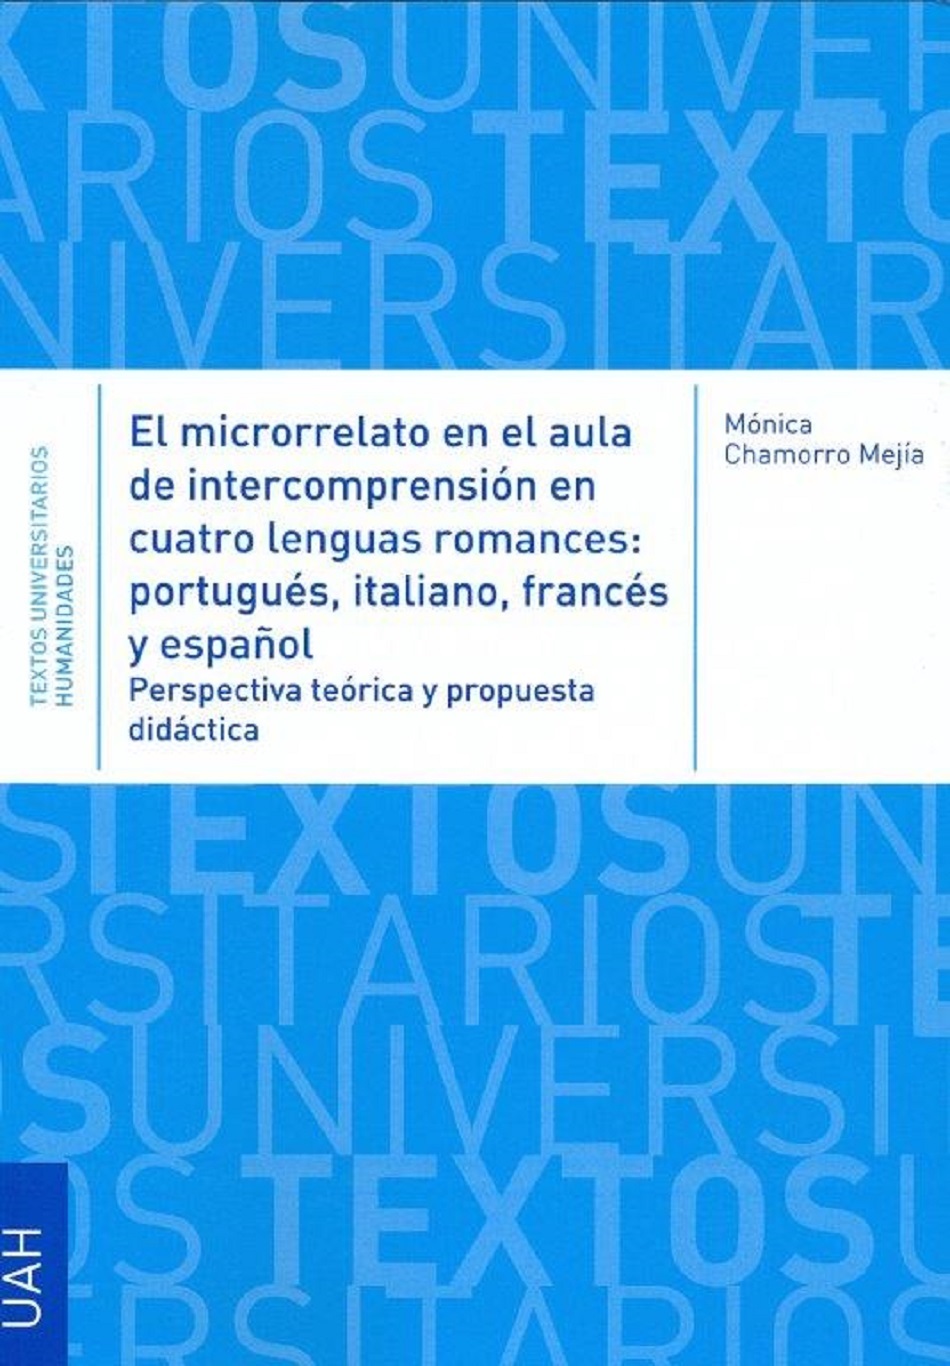 El microrrelato en el aula de intercompresión en cuatro lenguas romances: portugués, italiano, francés y español